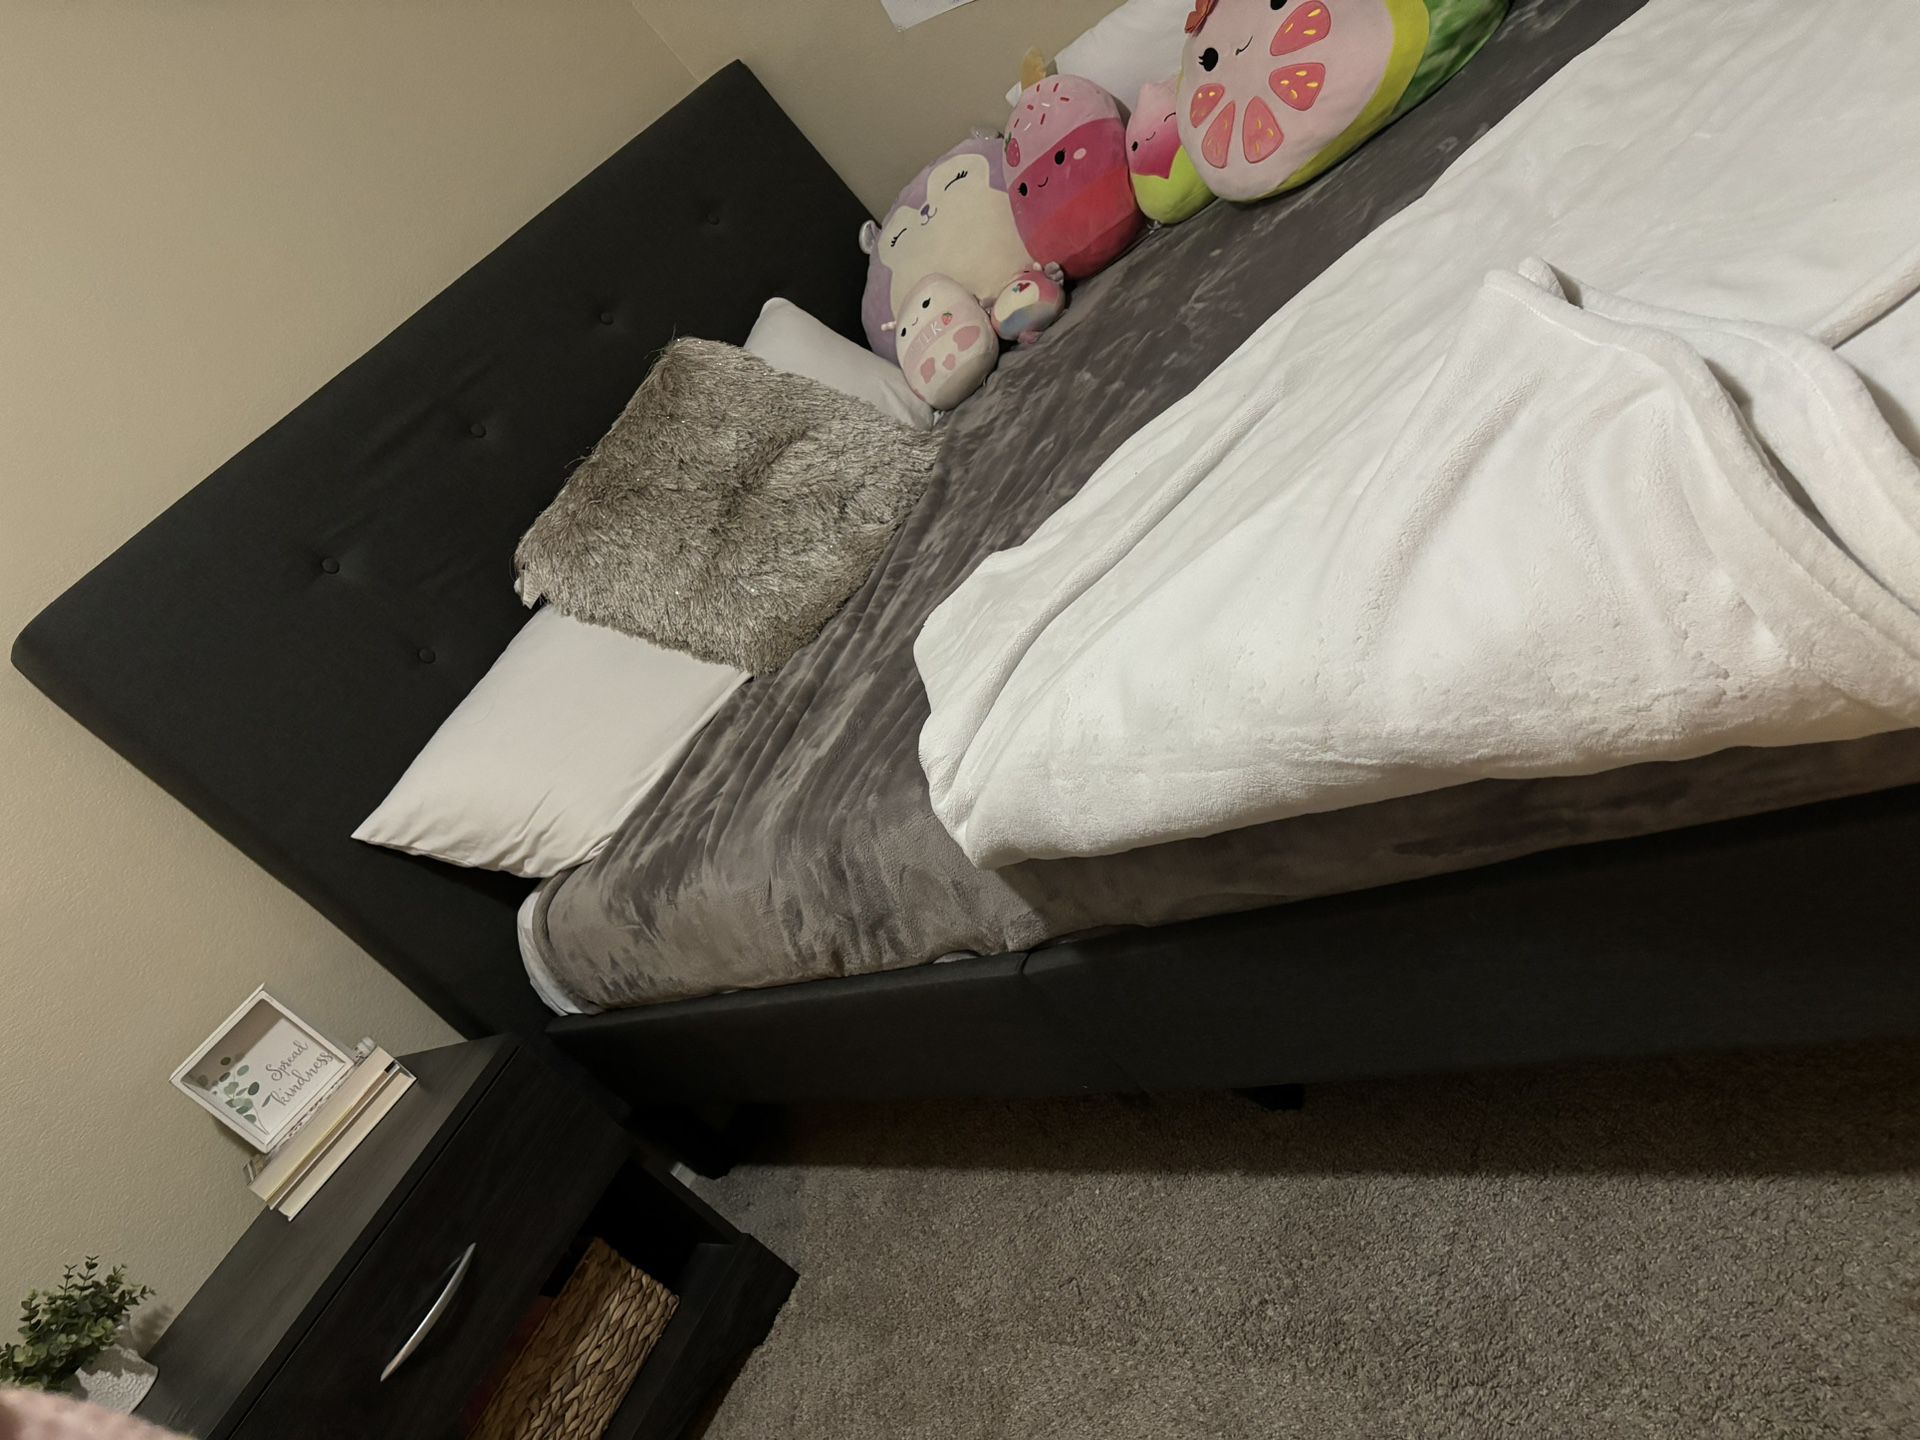 Queen Bed Set